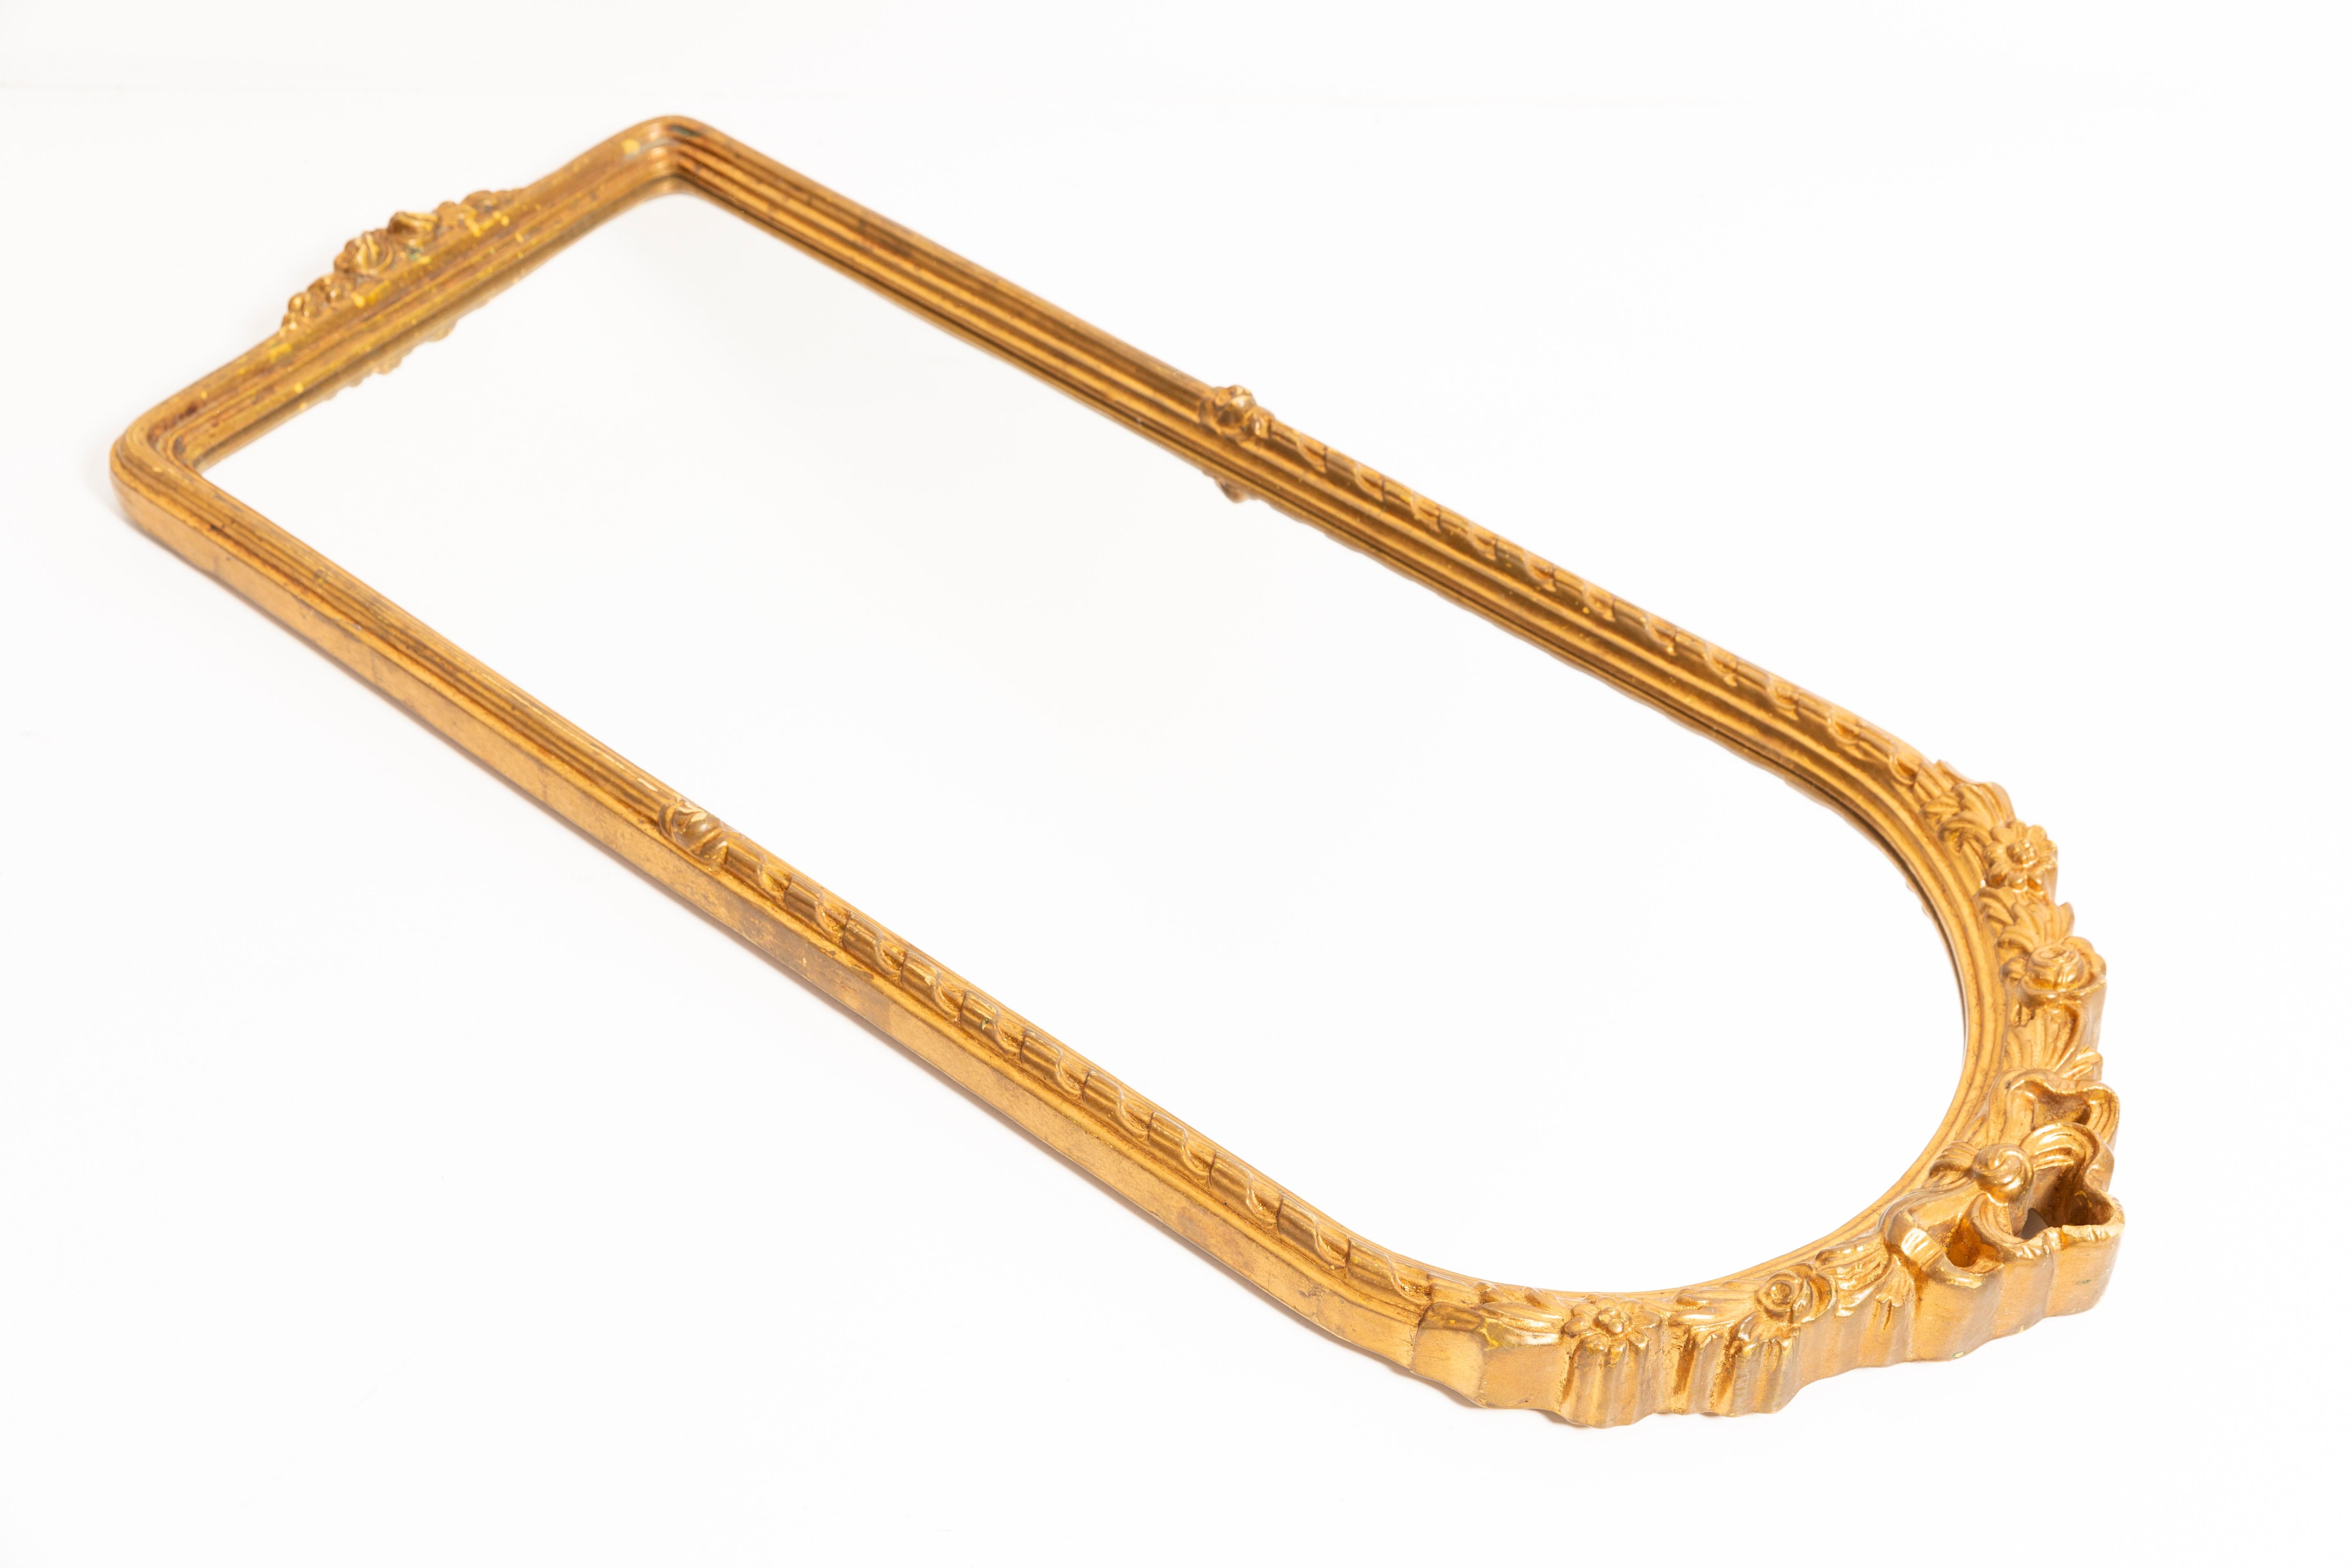 Magnifique miroir dans un cadre décoratif doré d'Italie. Le cadre est en bois. Le miroir est en très bon état vintage, aucun dommage ou fissure dans le cadre. Verre original. Une belle pièce pour chaque intérieur ! Une seule pièce unique.